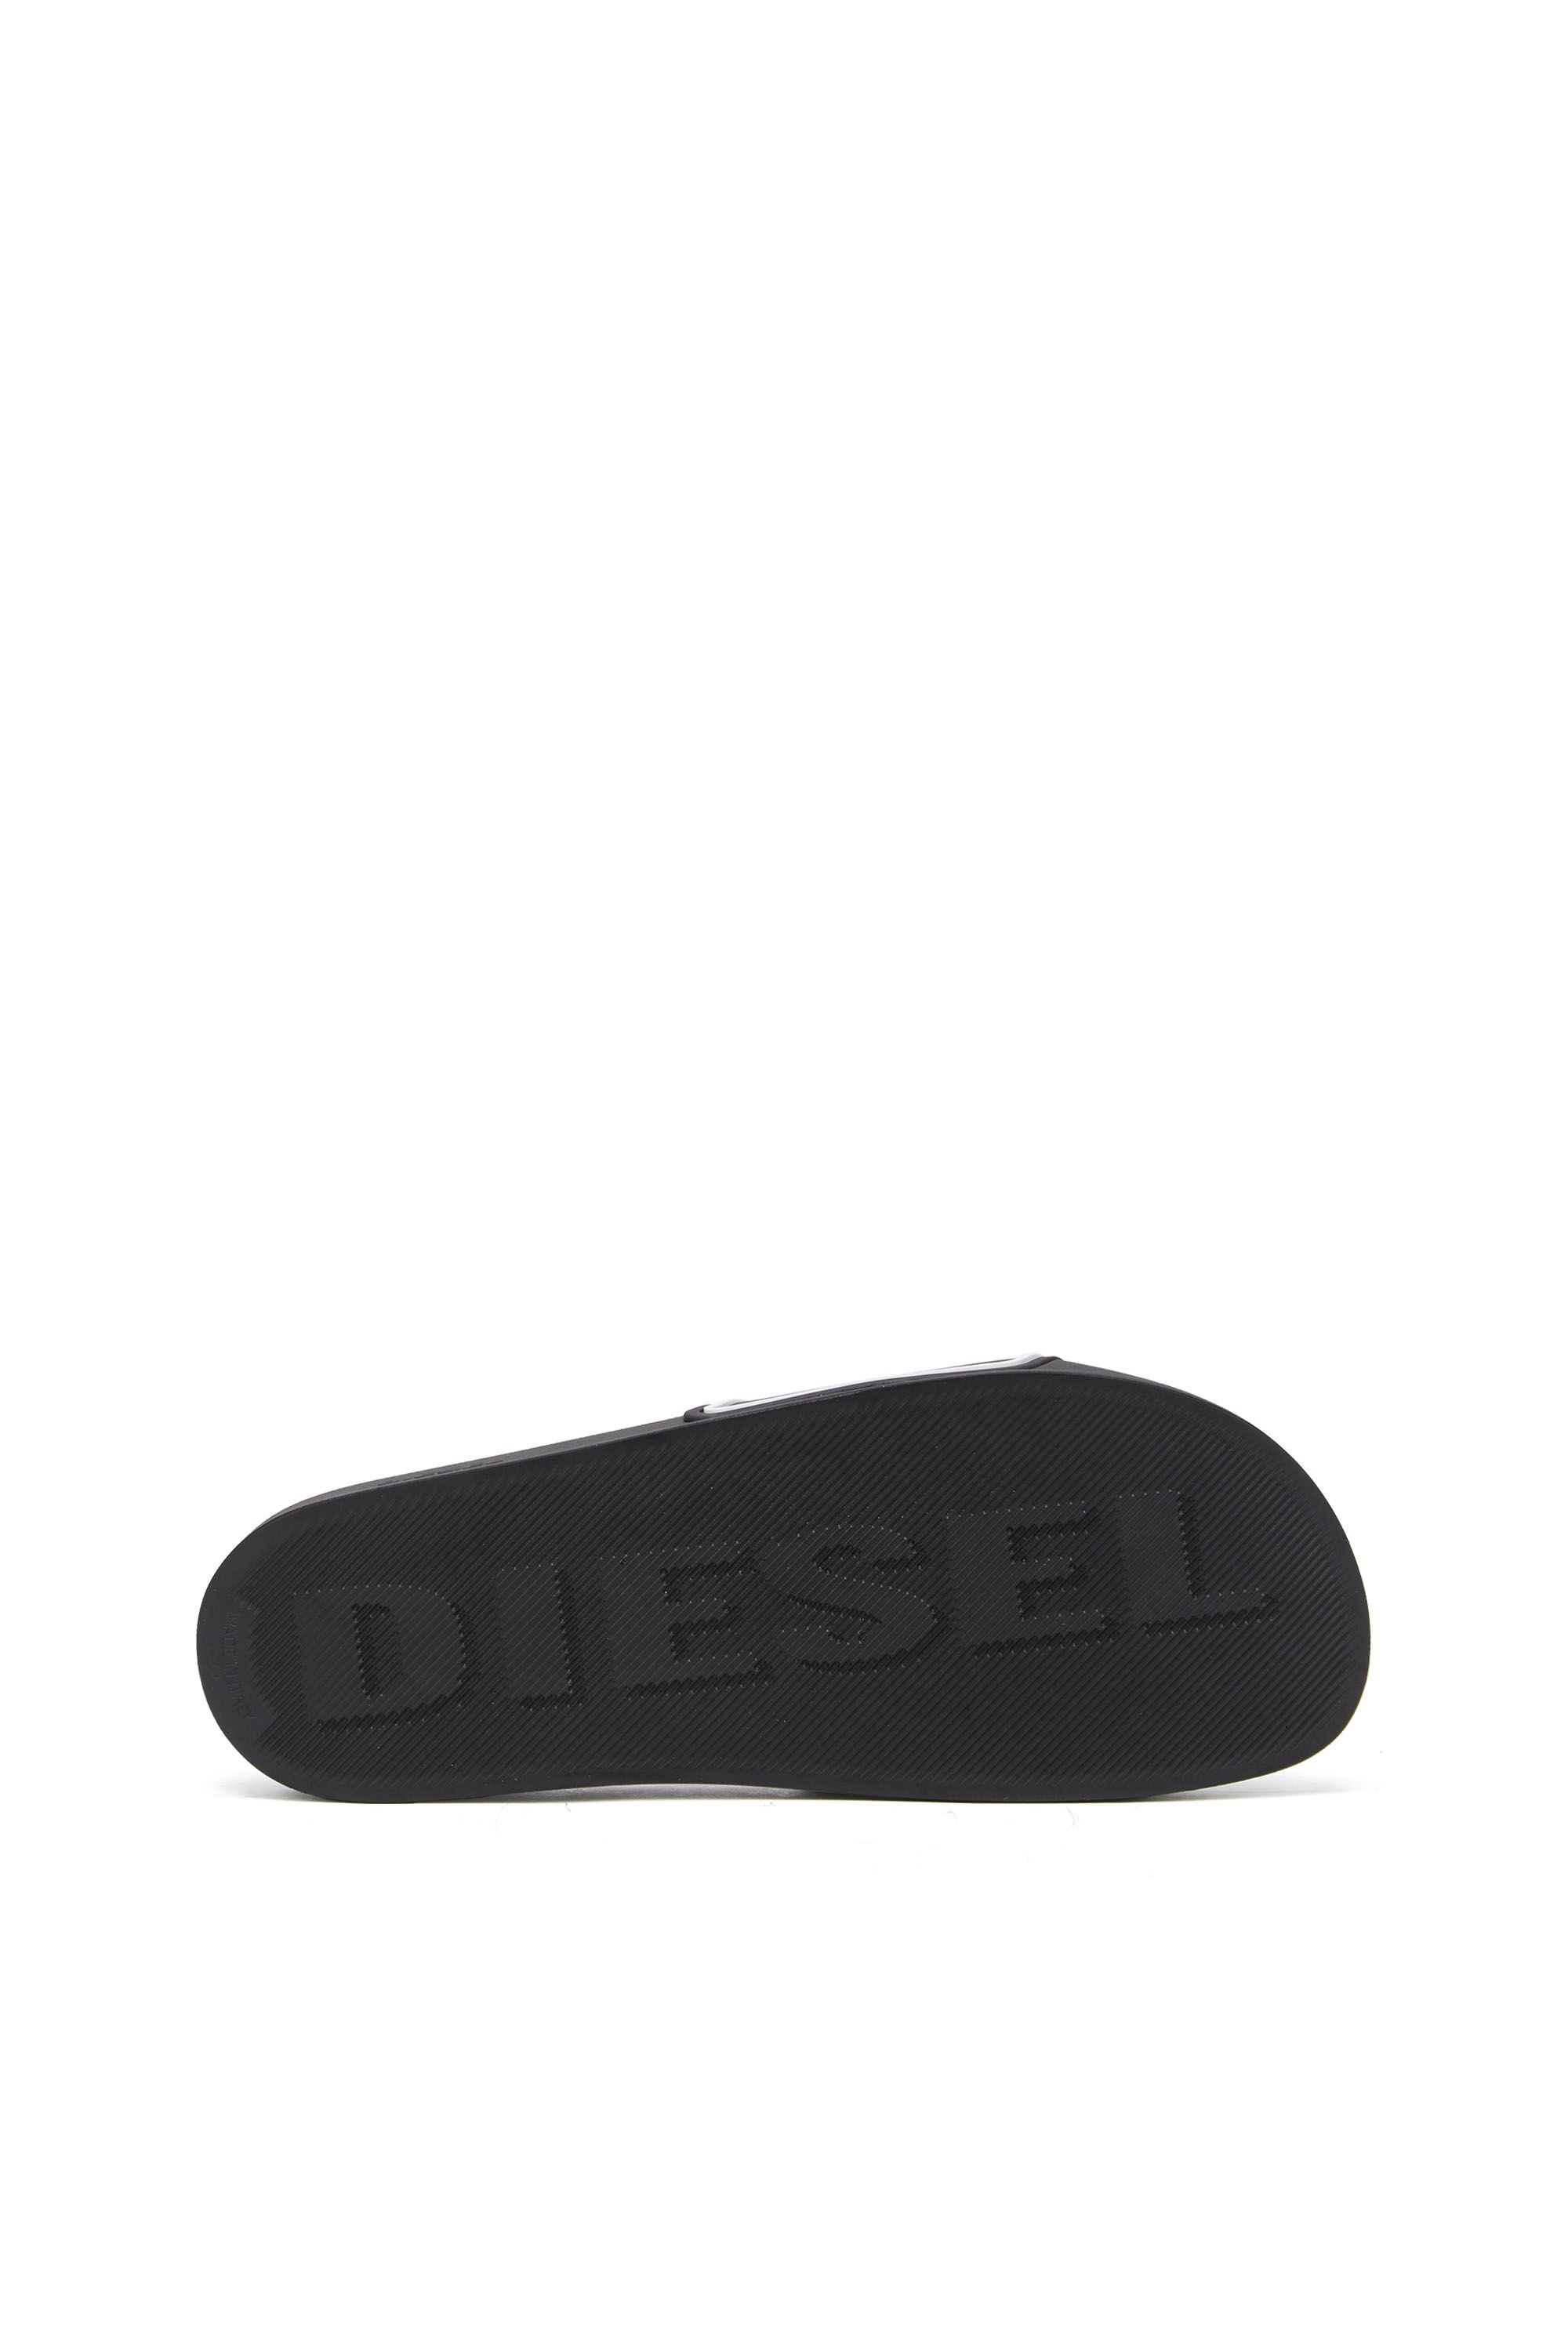 Diesel - SA-MAYEMI CC, Black/White - Image 5